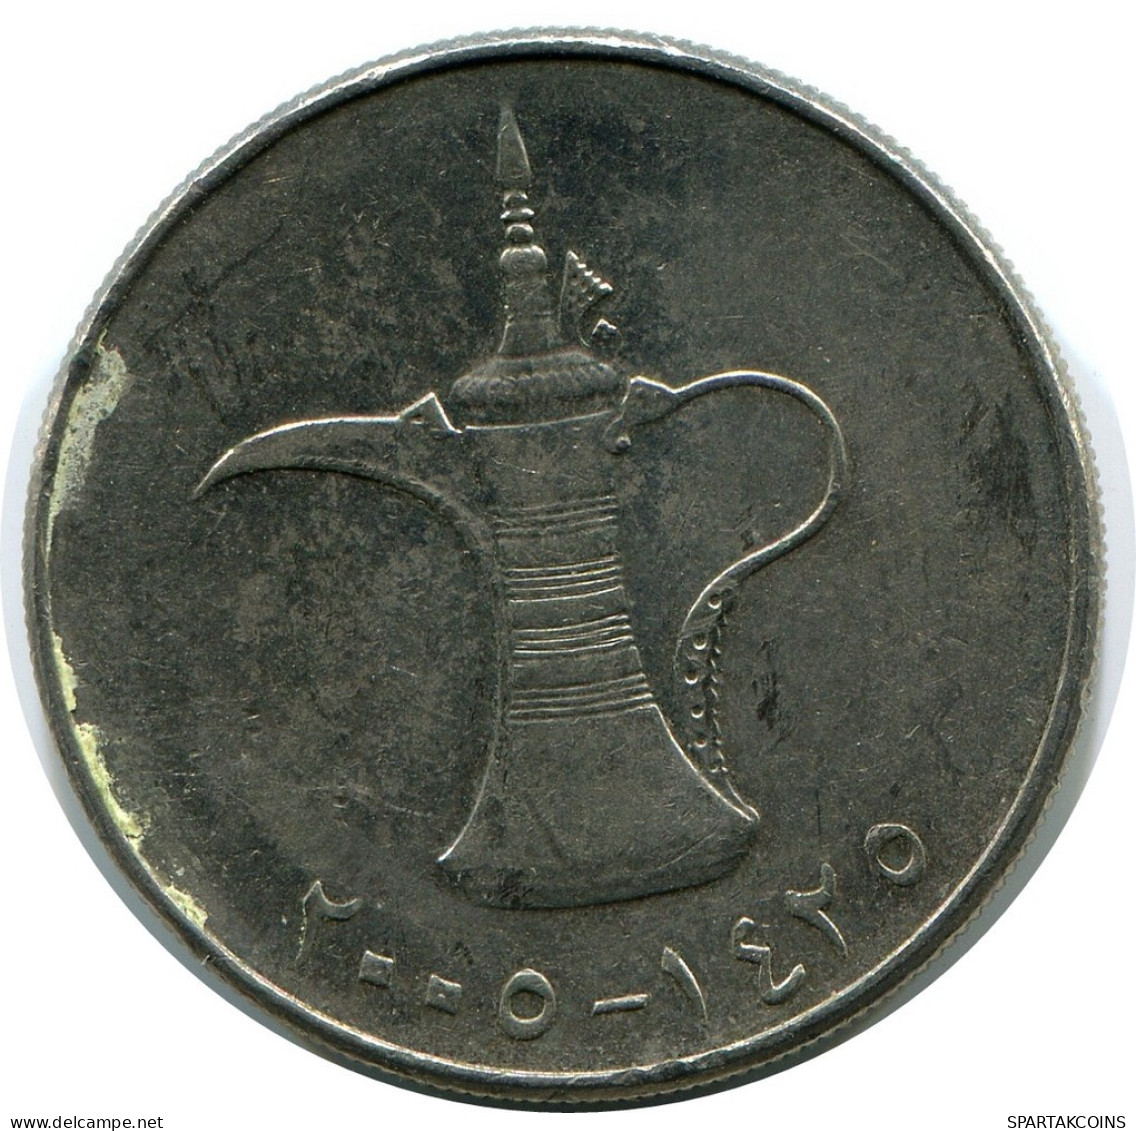 1 DIRHAM 2005 UAE UNITED ARAB EMIRATES Moneda #AR048.E.A - Ver. Arab. Emirate